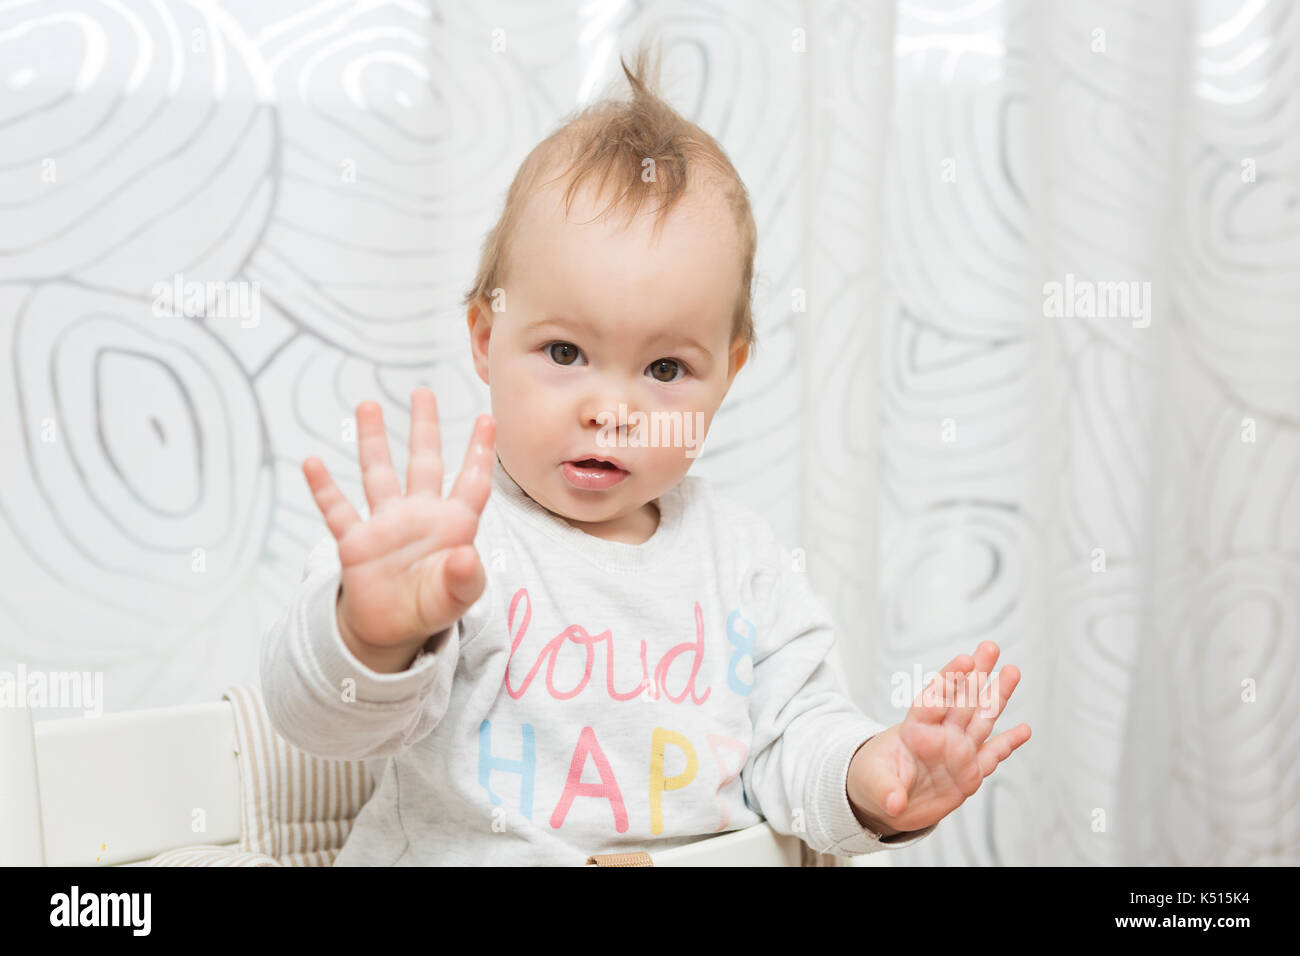 Onze mois baby girl sitting dans un tabouret pour faire des grimaces à la caméra, elle élève ses deux mains en l'air Banque D'Images